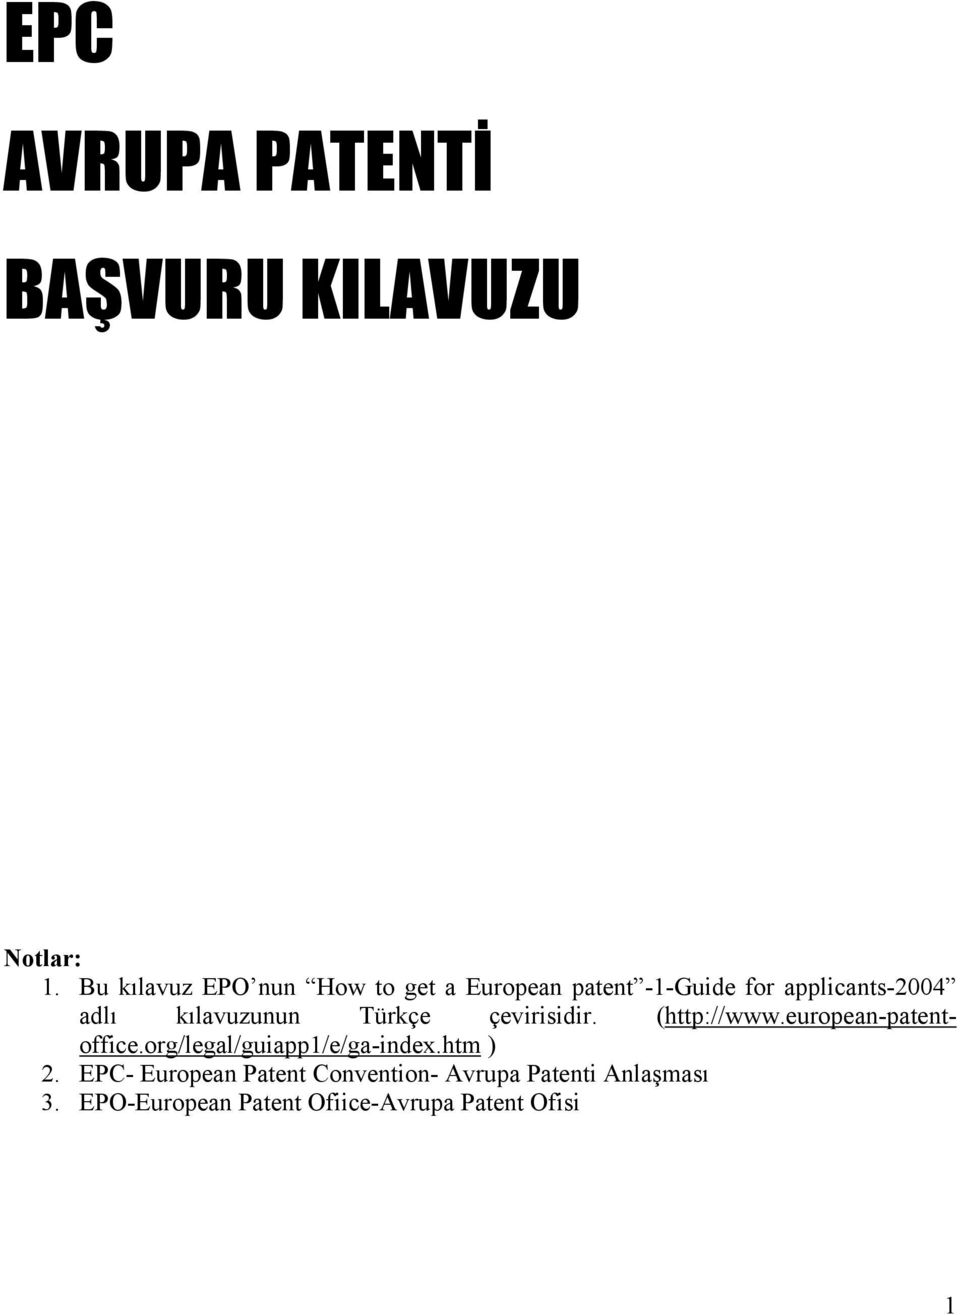 kılavuzunun Türkçe çevirisidir. (http://www.european-patentoffice.